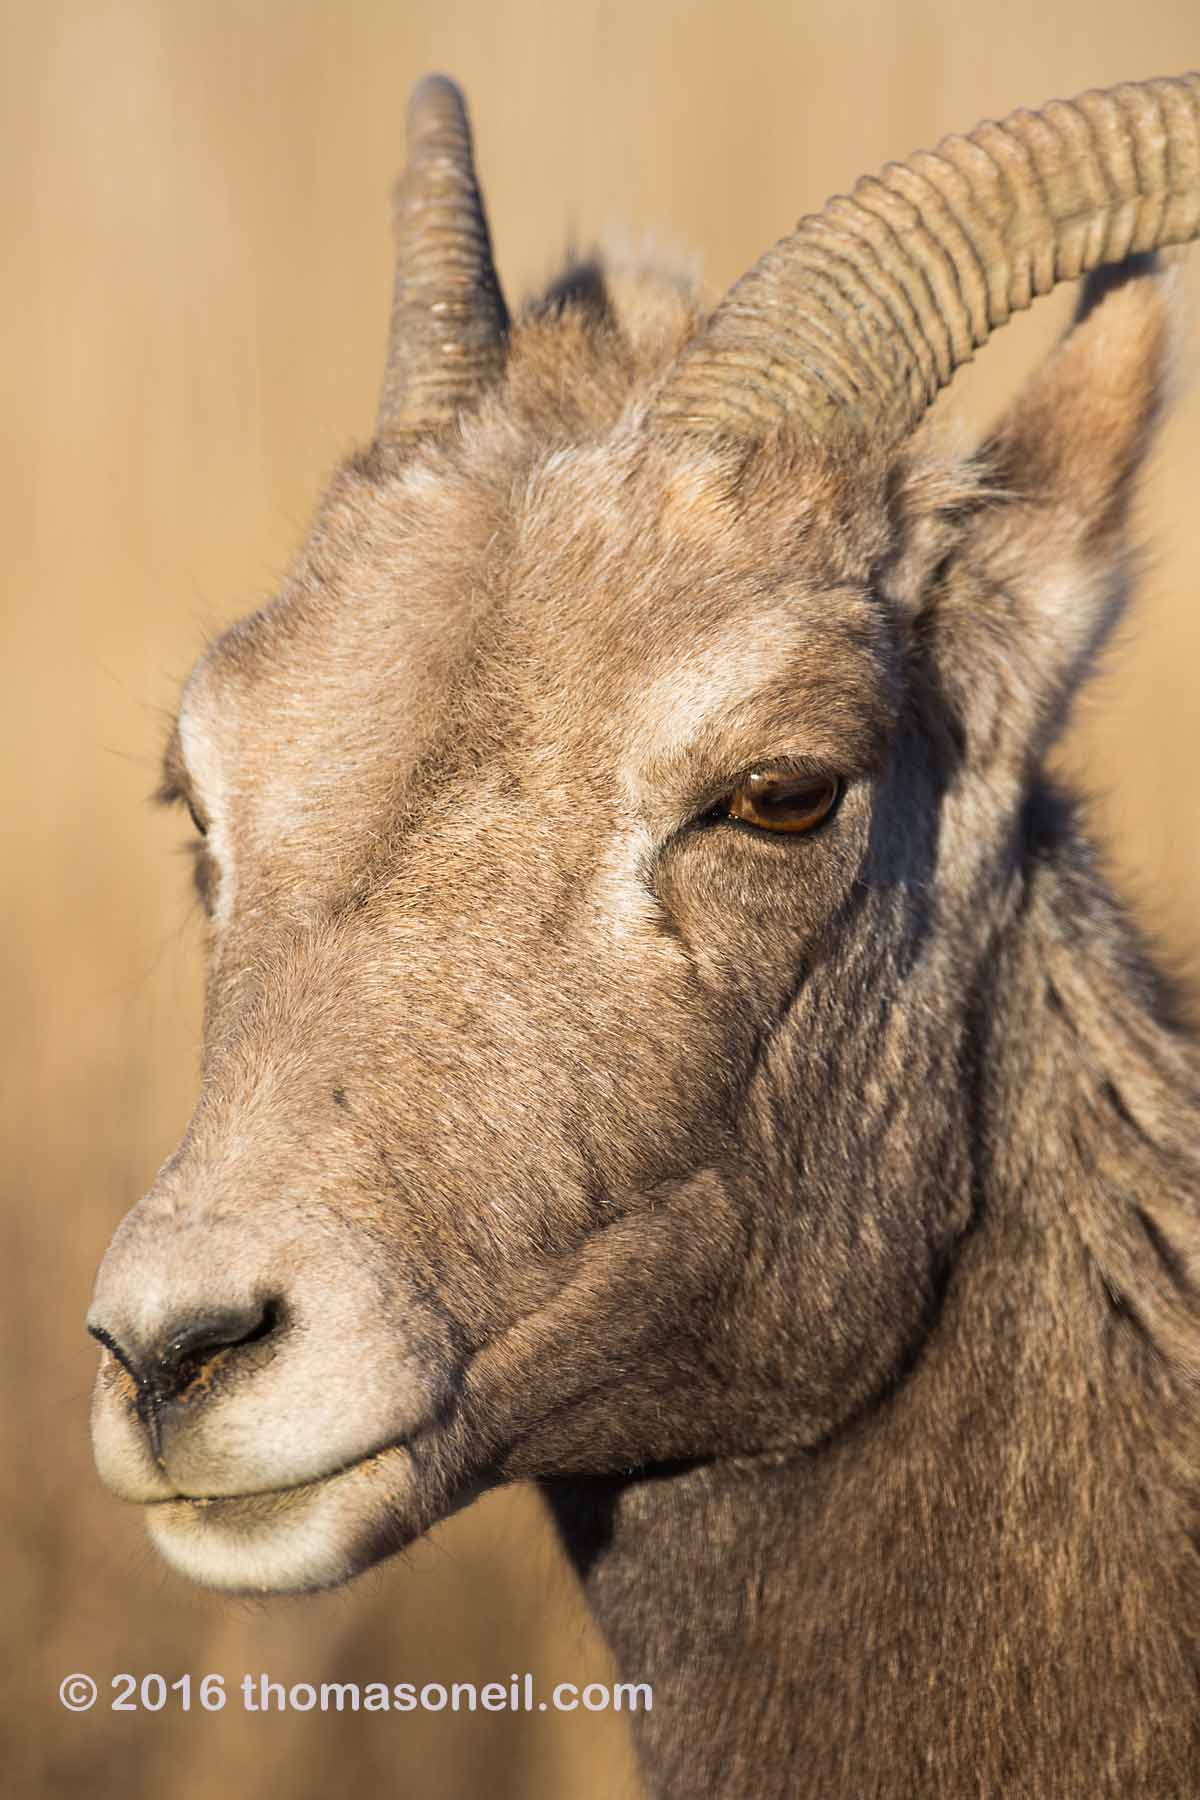 Bighorn ewe portrait, Badlands National Park.  Click for next photo.